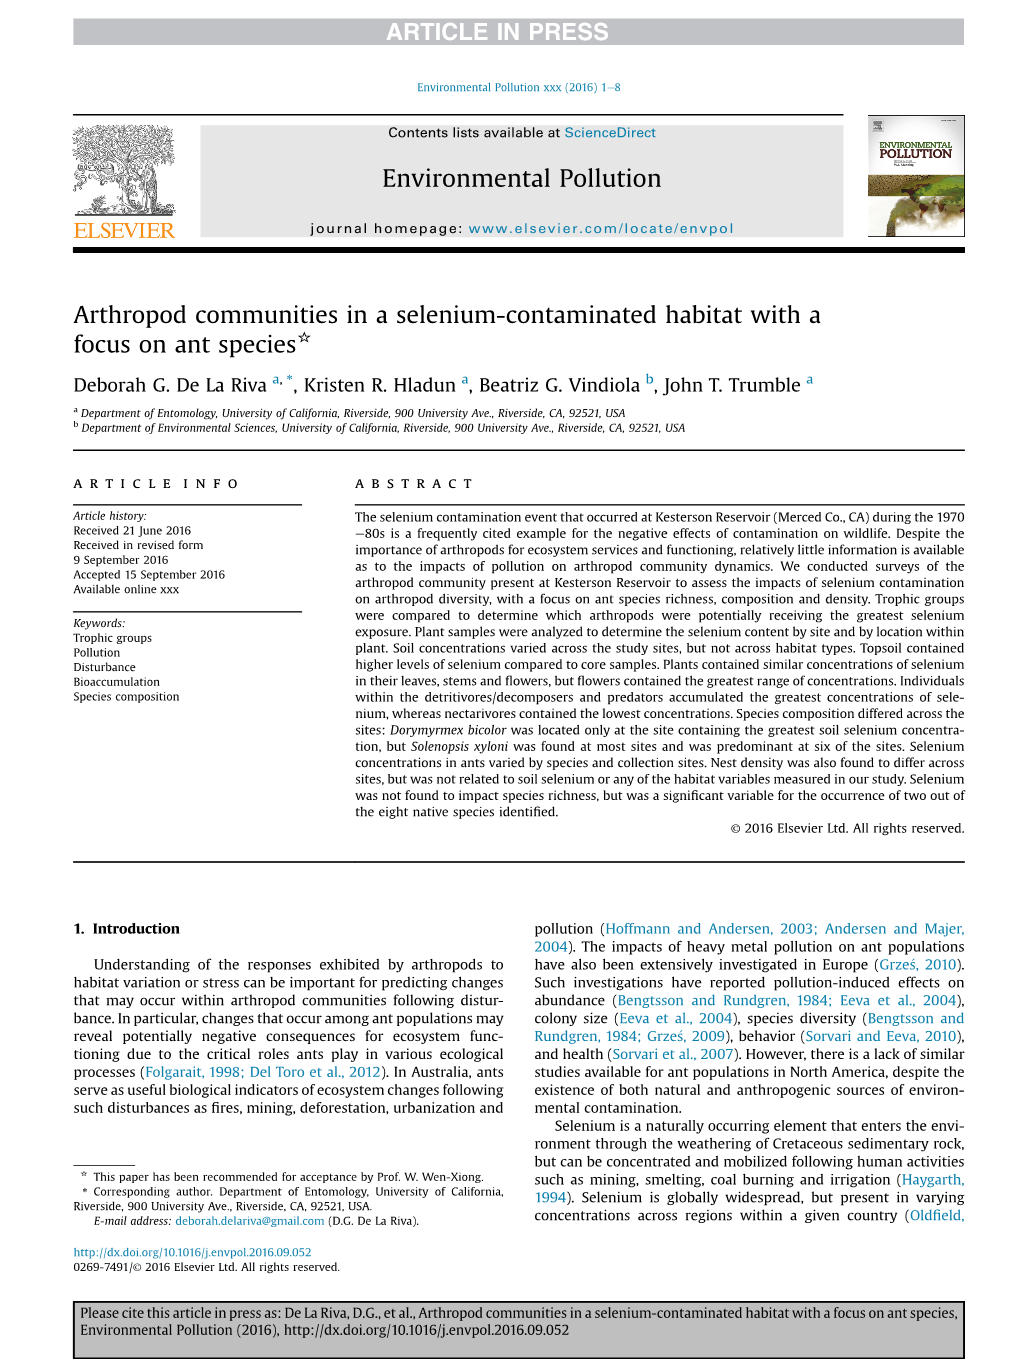 Arthropod Communities in a Selenium-Contaminated Habitat with a Focus on Ant Species*